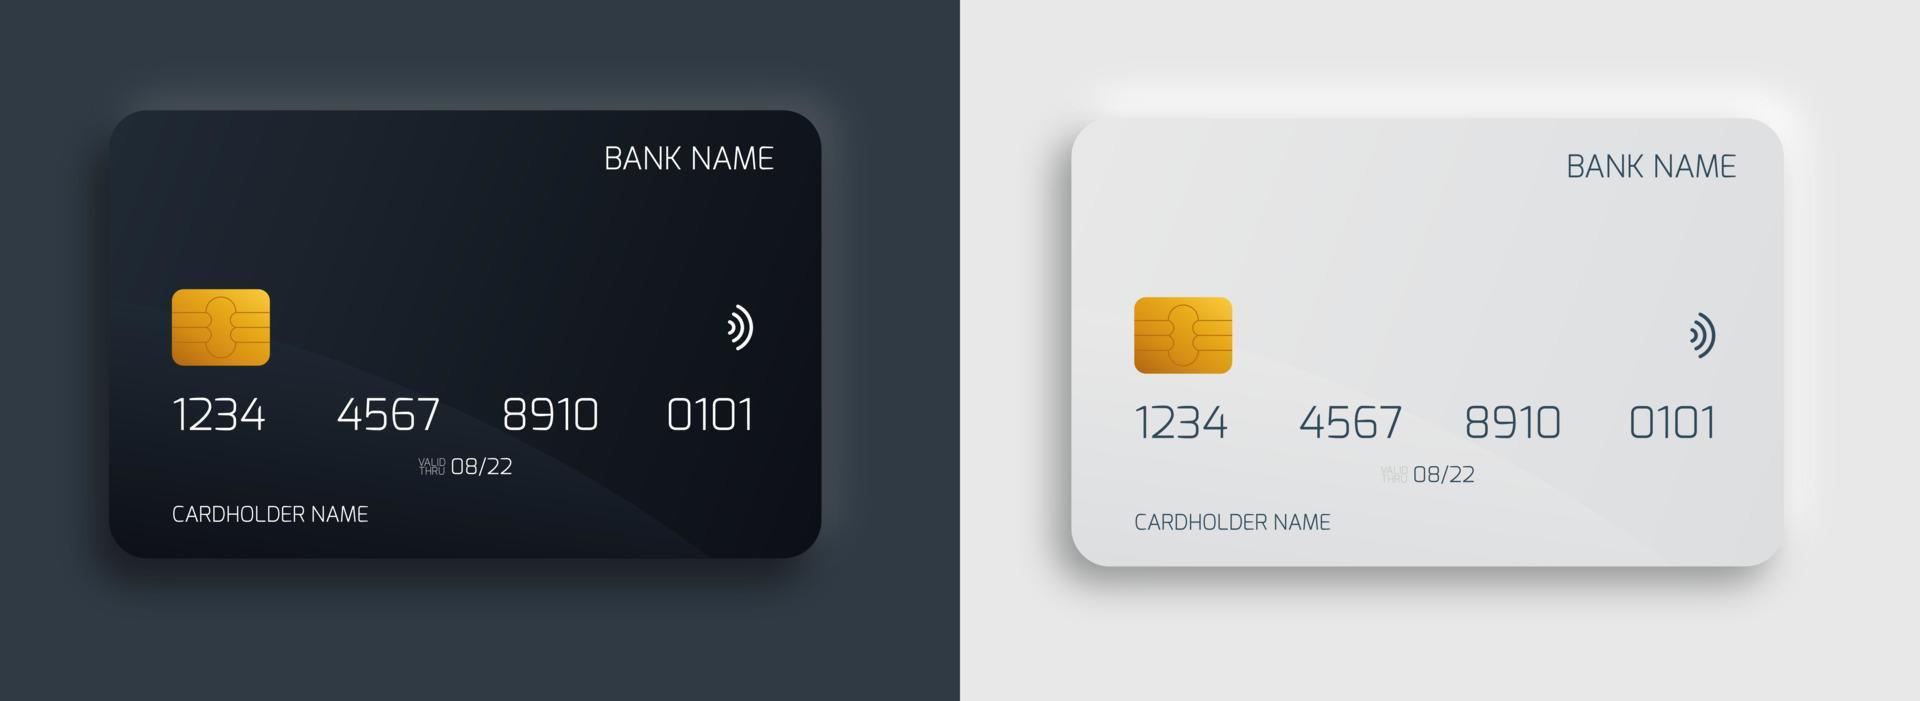 Plastik-Bankkarten-Design-Vorlagenset. Isoliertes Kredit- oder Debitkartenmodell mit dunklem und hellem Farbkonzept. vektor